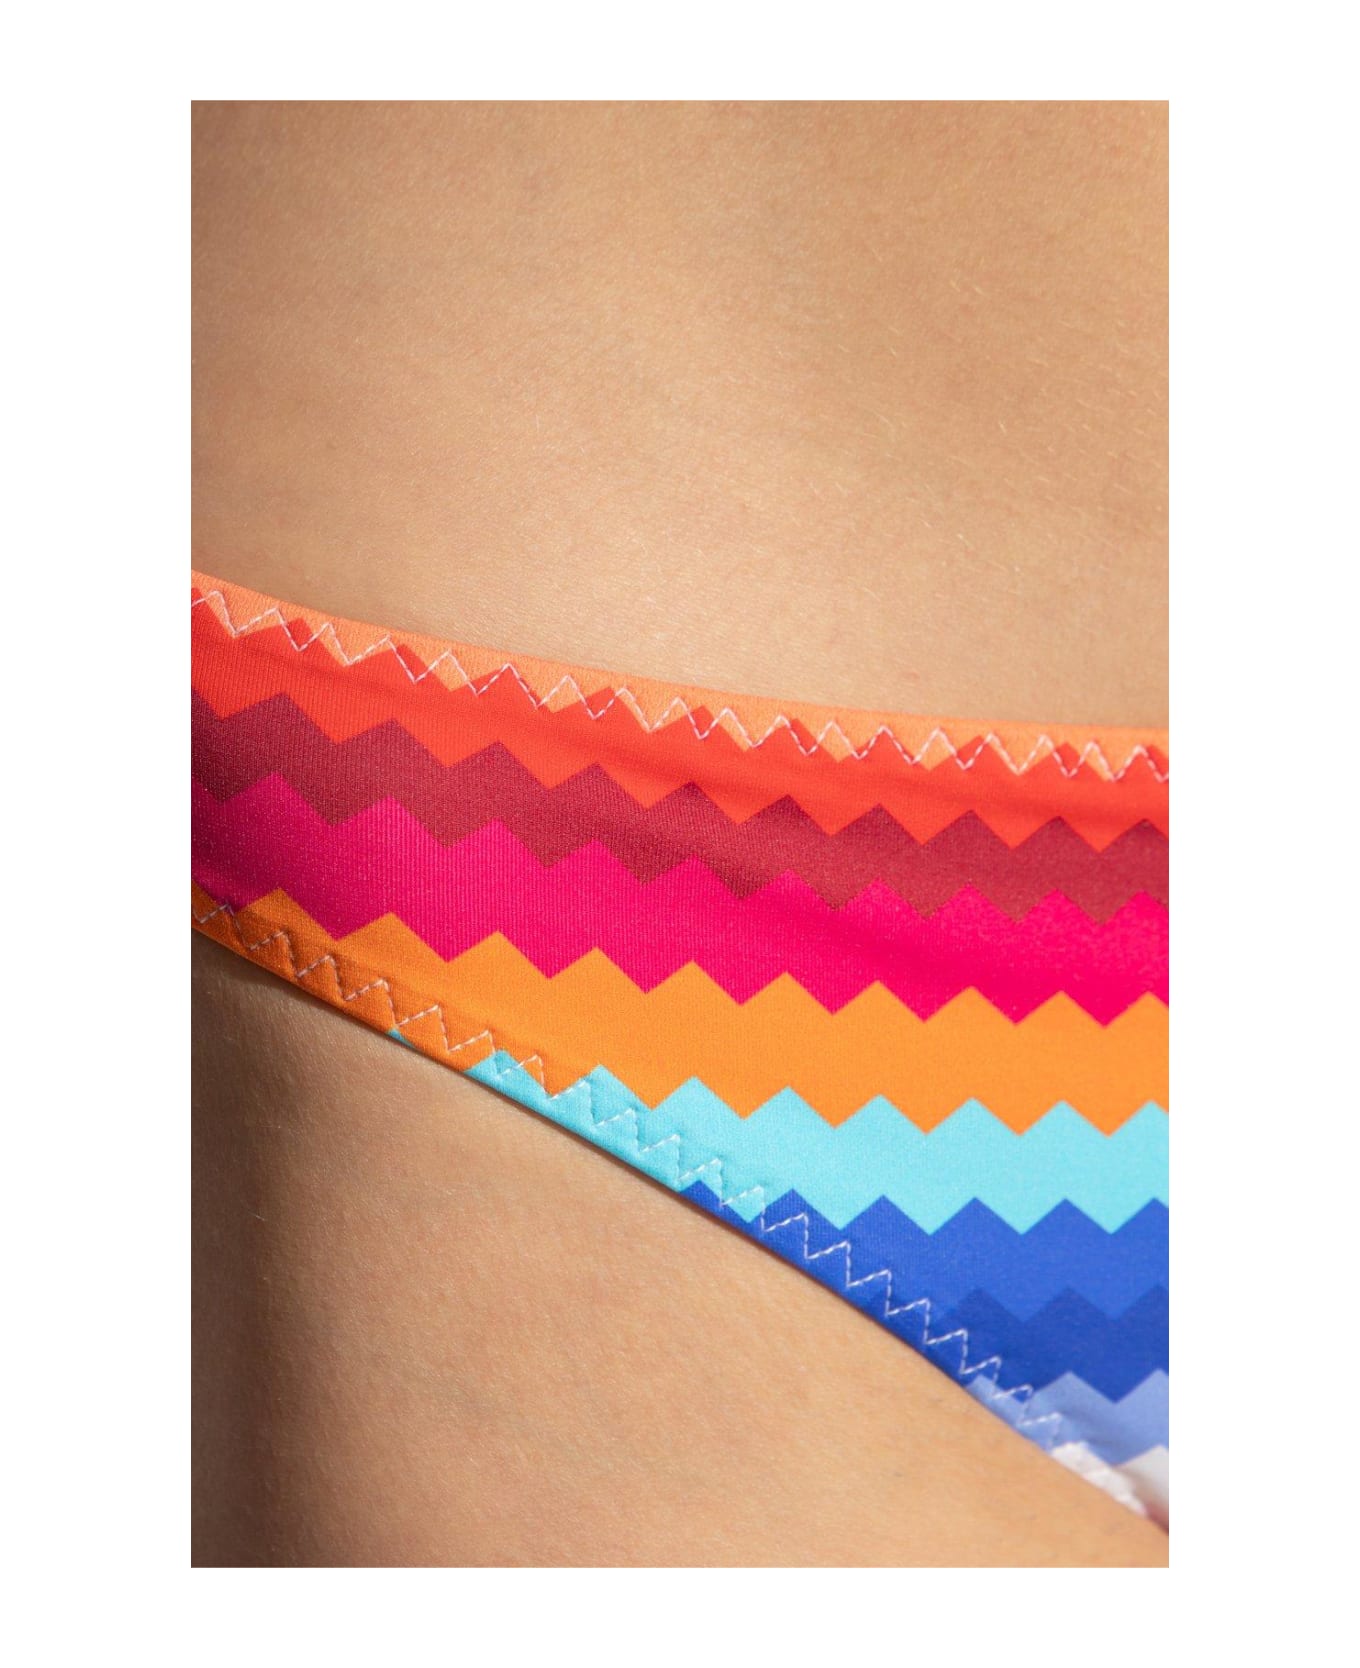 Missoni Zigzag-printed Stretched Bikini Set - Multicolor スウェットパンツ